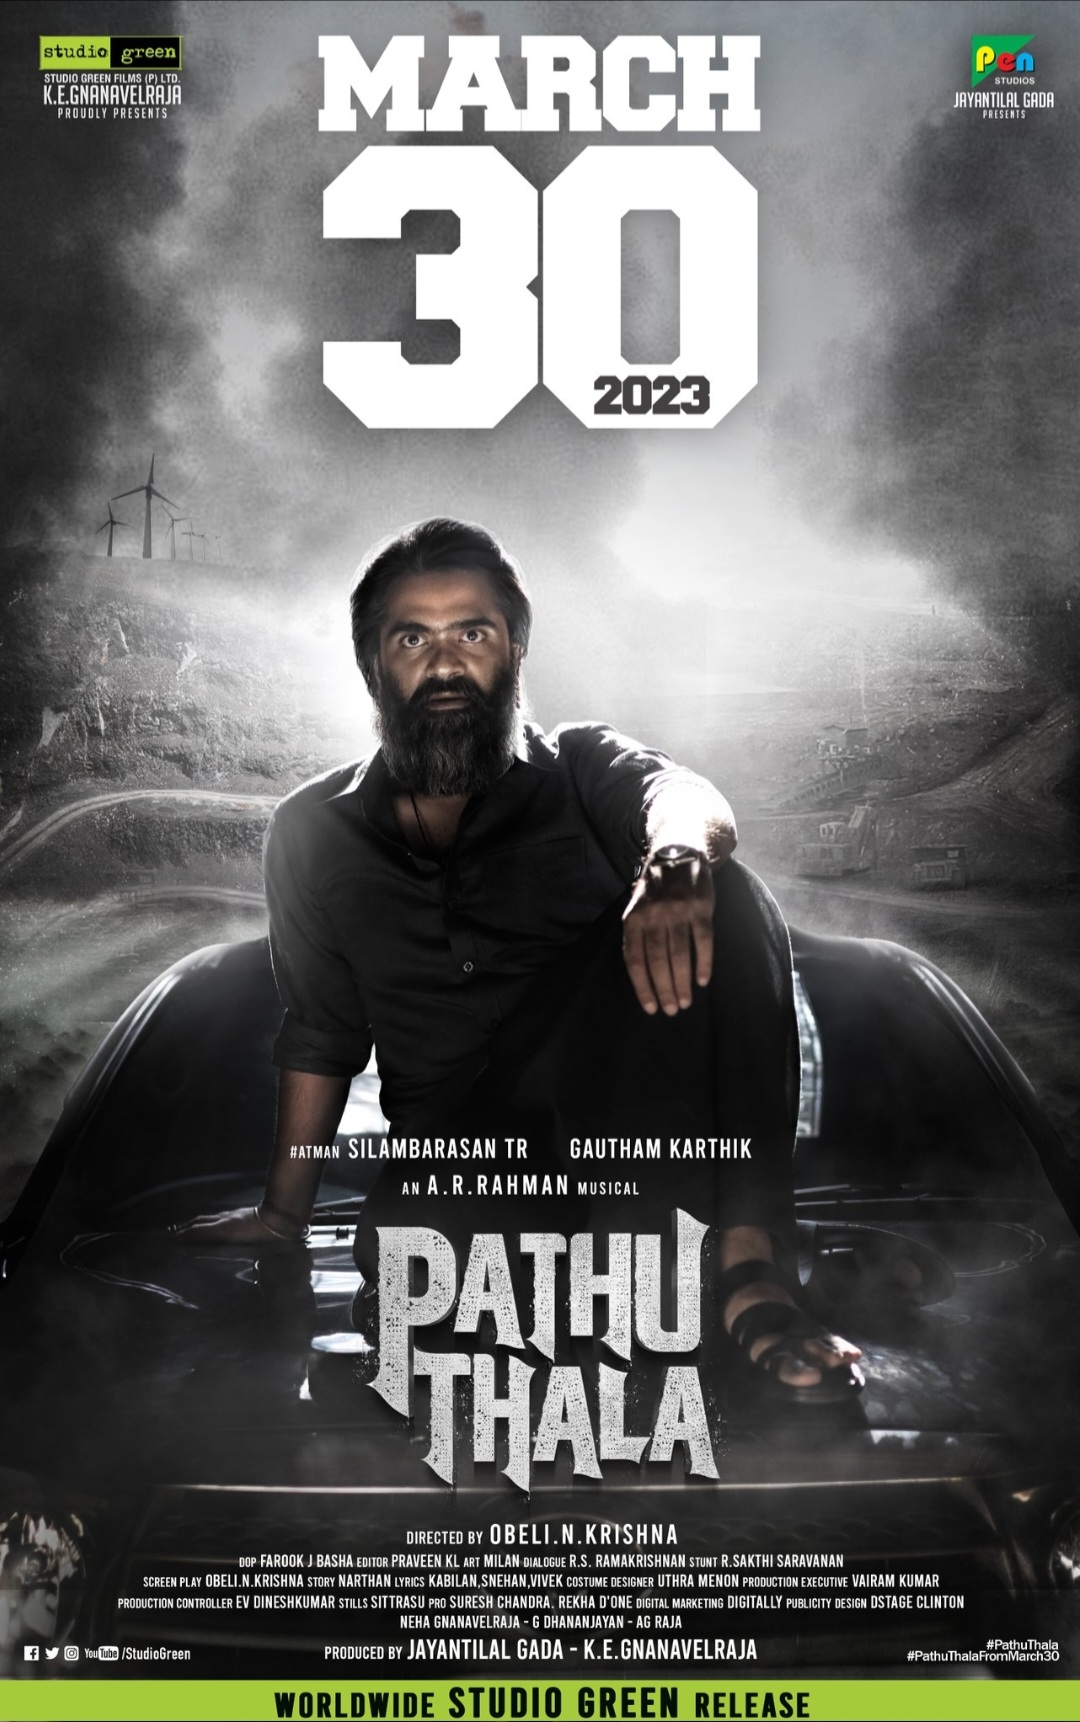 ดูหนังออนไลน์ฟรี ดูหนังฟรี Pathu Thala 2023